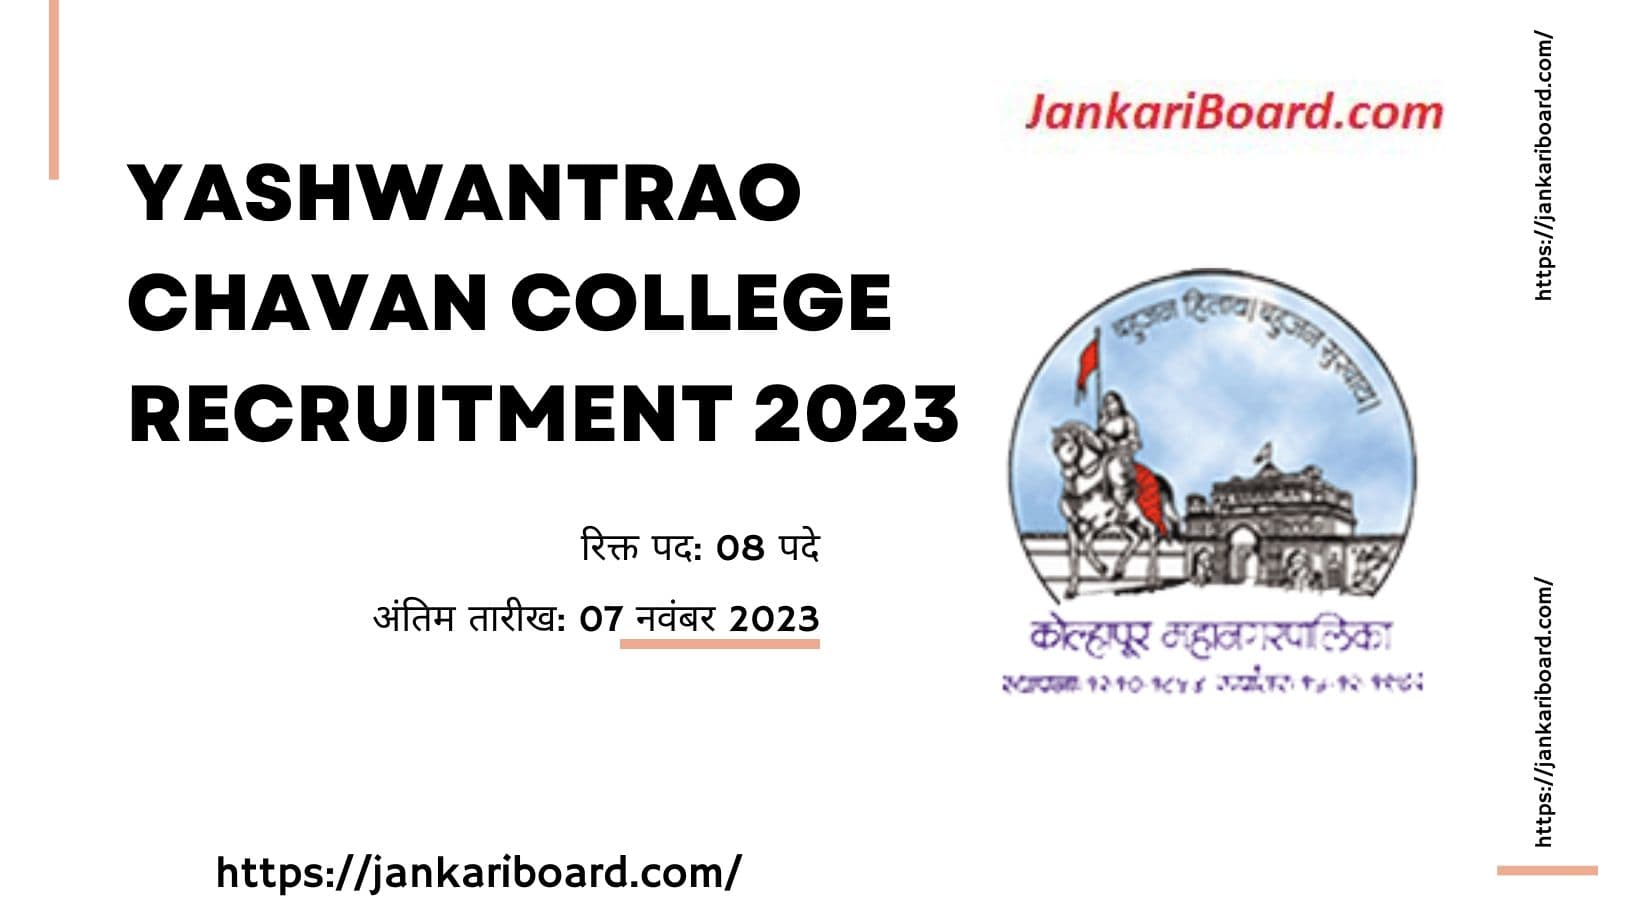 Yashwantrao Chavan College Recruitment 2023